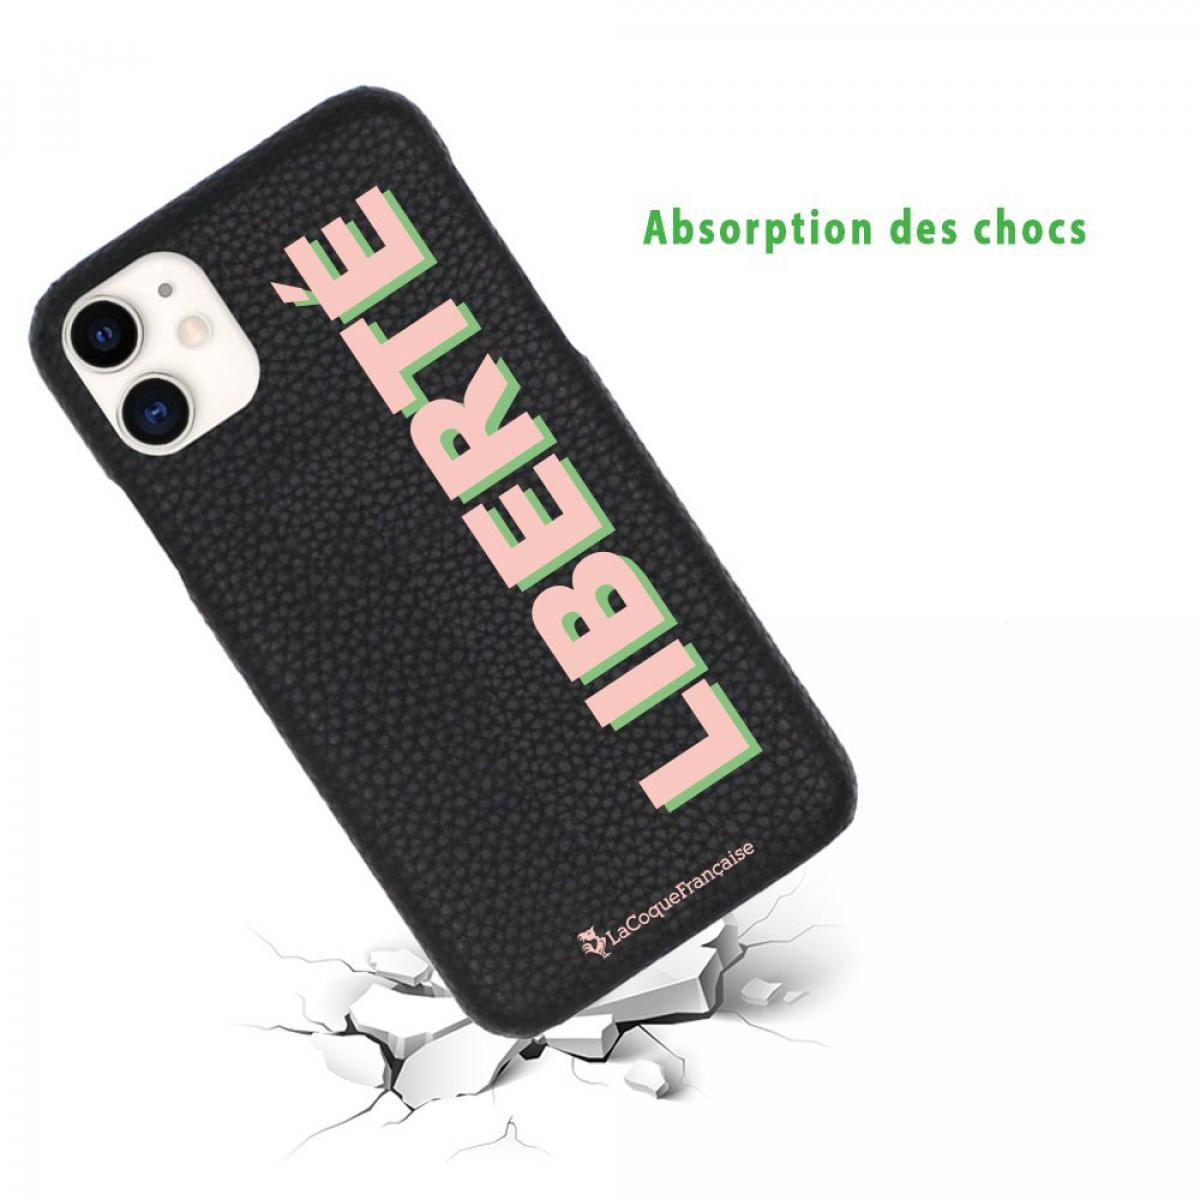 Coque iPhone 11 effet cuir grainé noir Liberté rose et vert Design La Coque Francaise